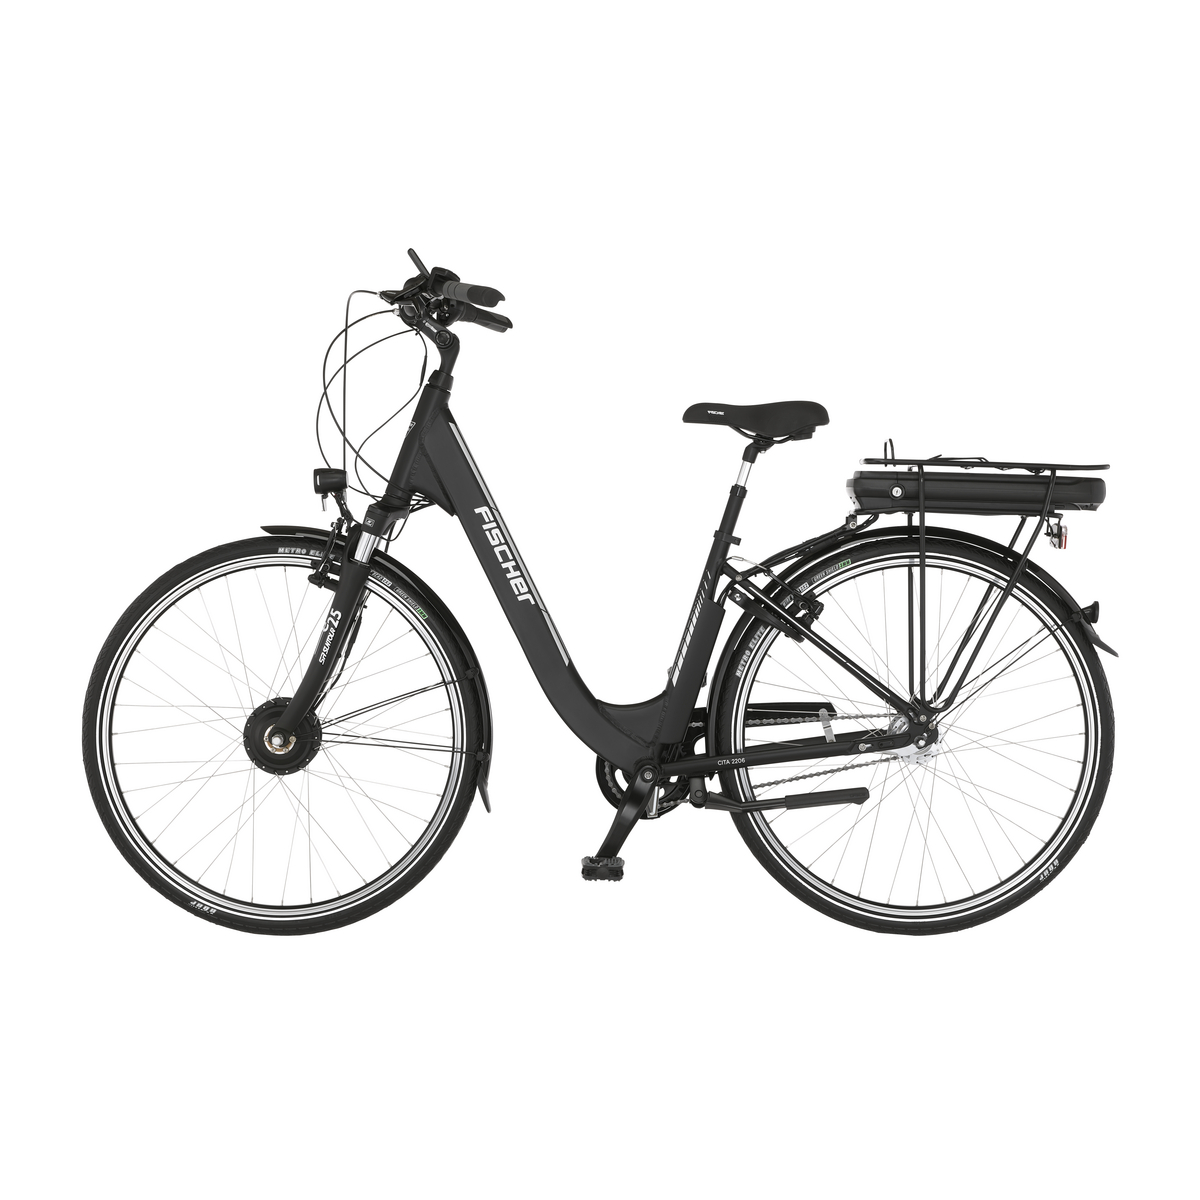 FISCHER CITA ECU 2206 City RH | - | City E-Bikes schwarz Outlet - 28 Outlet | 522 E-Bike | matt, Sale% Zoll, 44 E-Bikes Outlet cm, Generalüberholt Wh